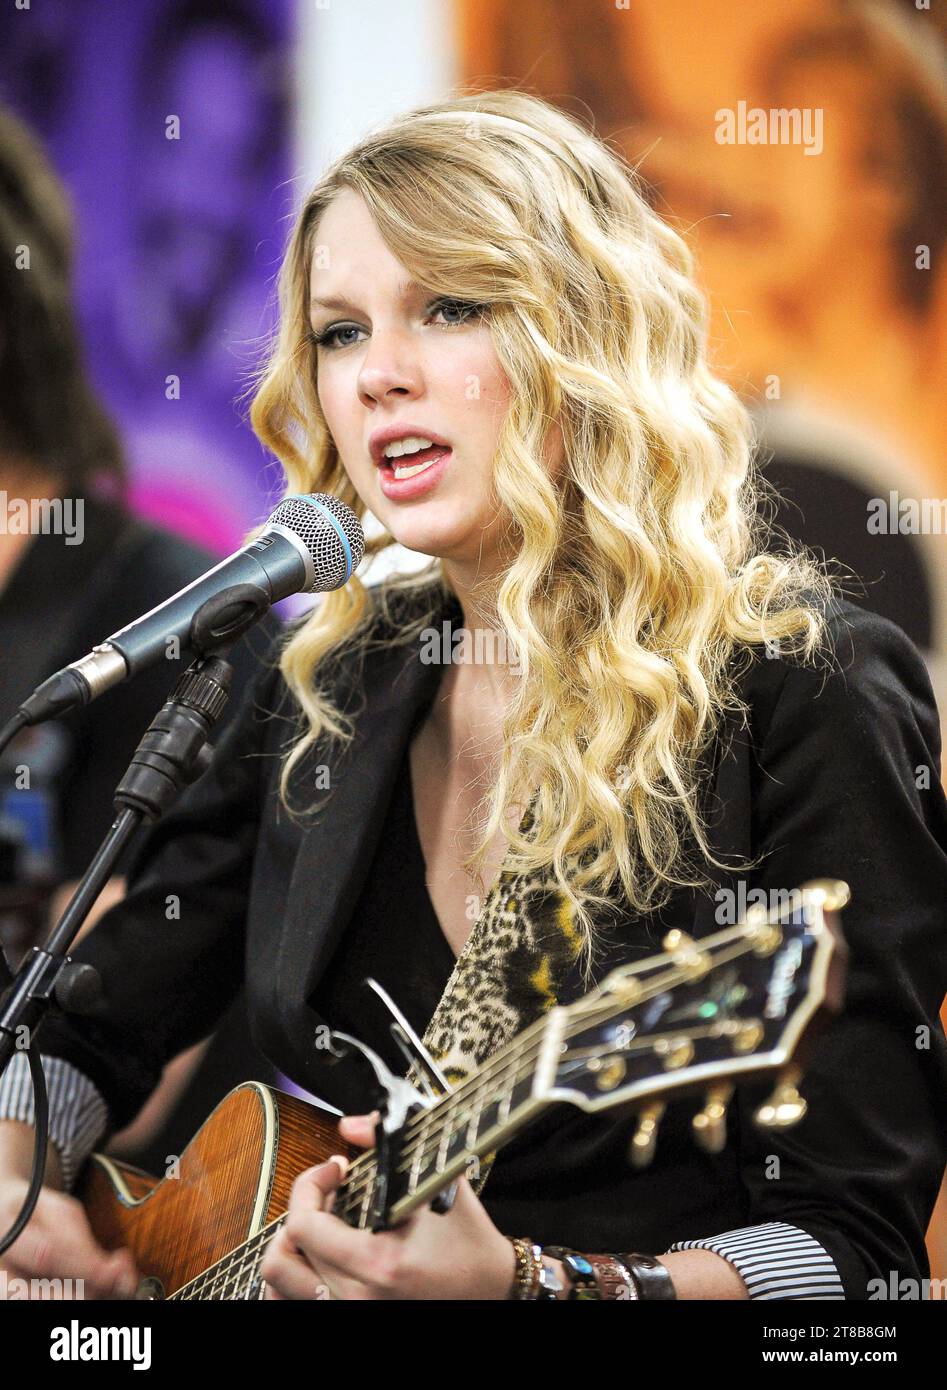 Taylor Swift, 19 Jahre alt, tritt am 19. Februar 2009 in Manchester auf. Stockfoto